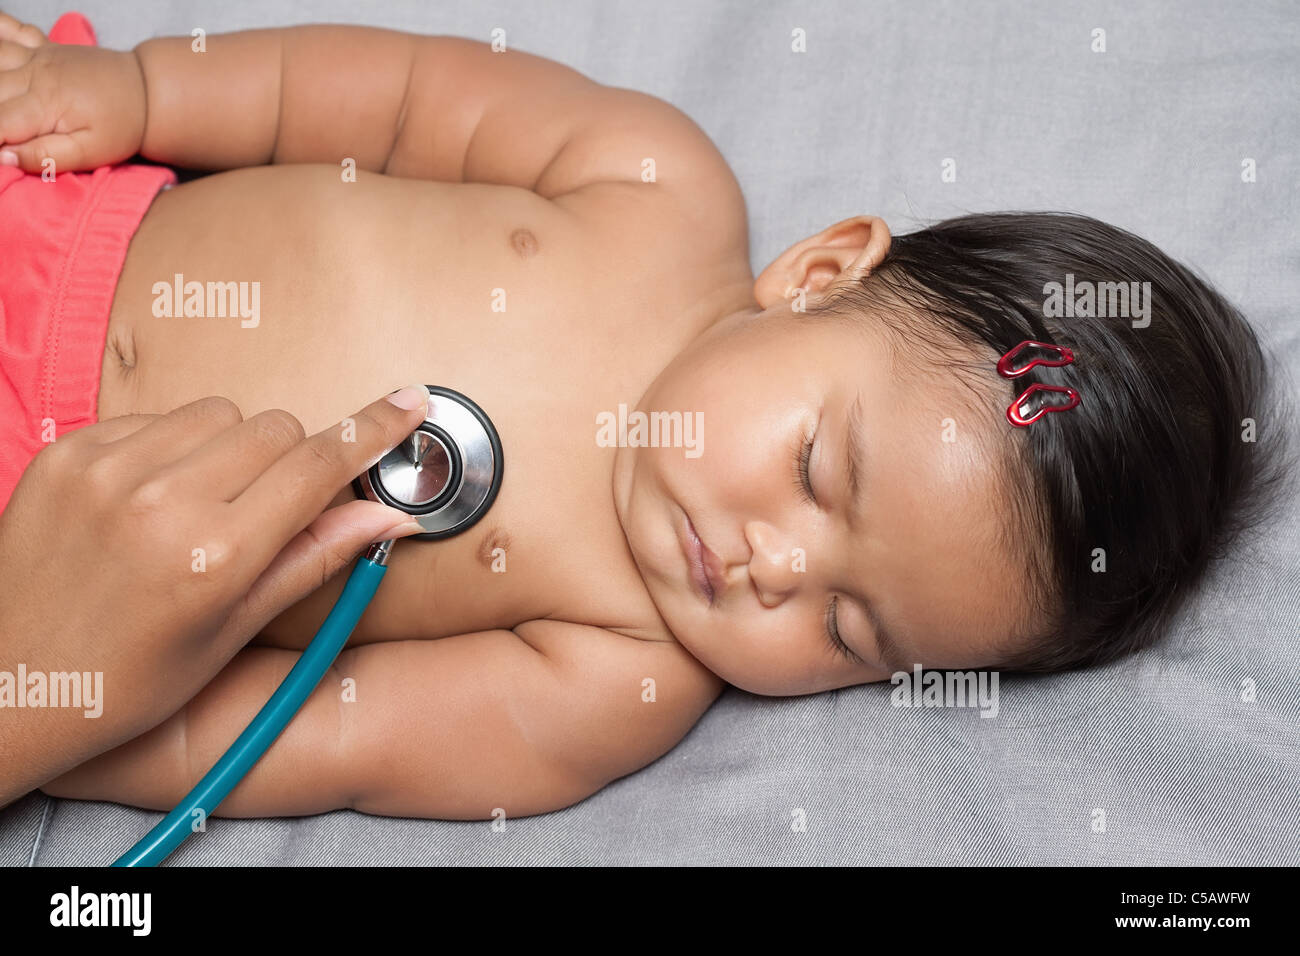 Sleeping baby fille obtenant un examen cardiaque avec les infirmières main doucement holding stethoscope sur la santé cardiaque du bébé au cours de check up Banque D'Images